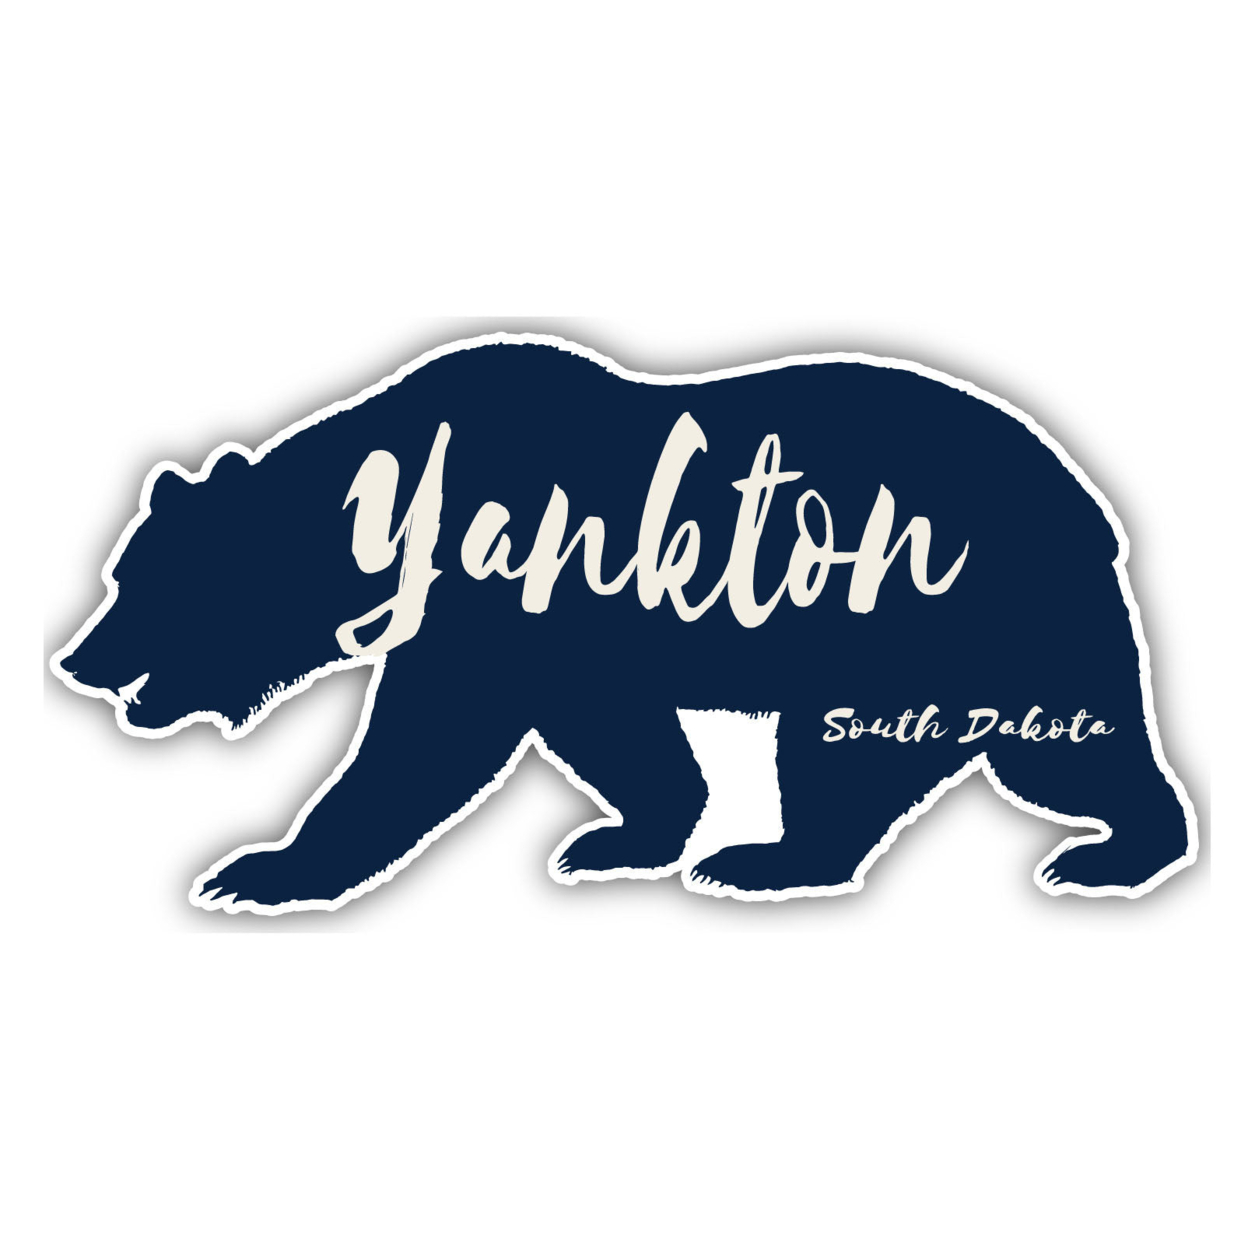 Yankton South Dakota Souvenir Decorative Stickers (Choose Theme And Size) - Single Unit, 4-Inch, Bear